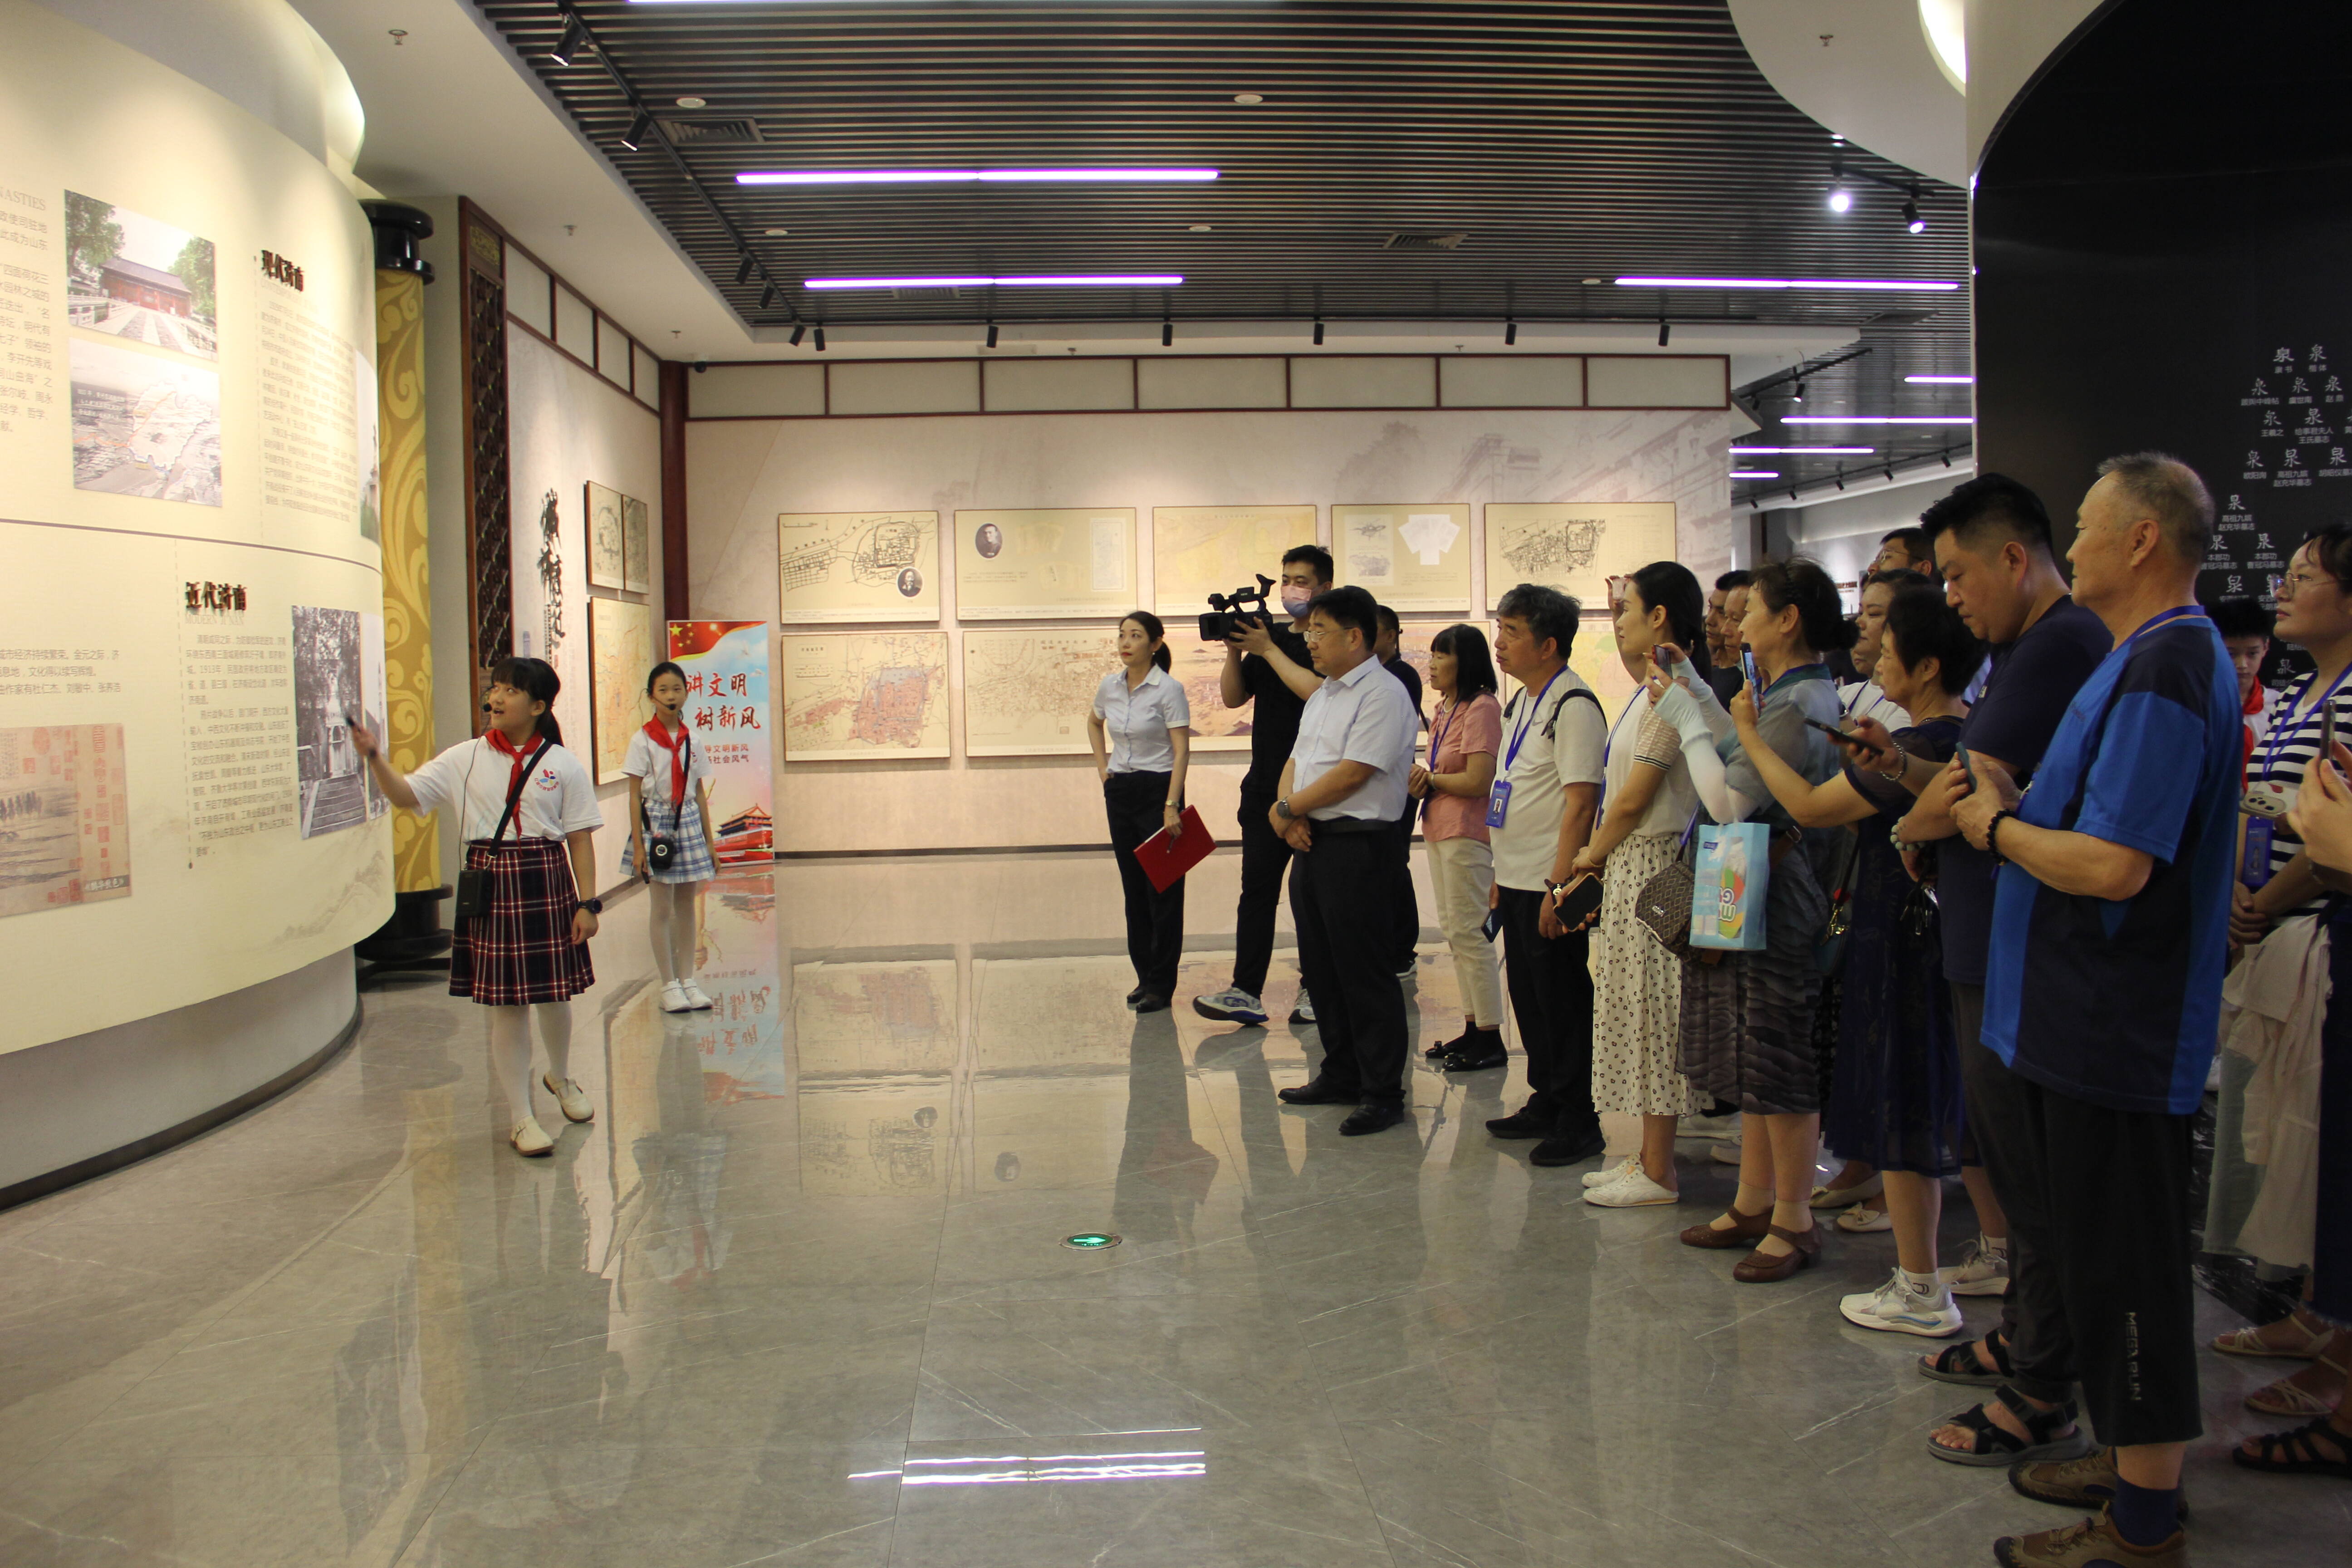 济南城市规划展览馆举办 “红领巾规划讲解员”社会实践活动